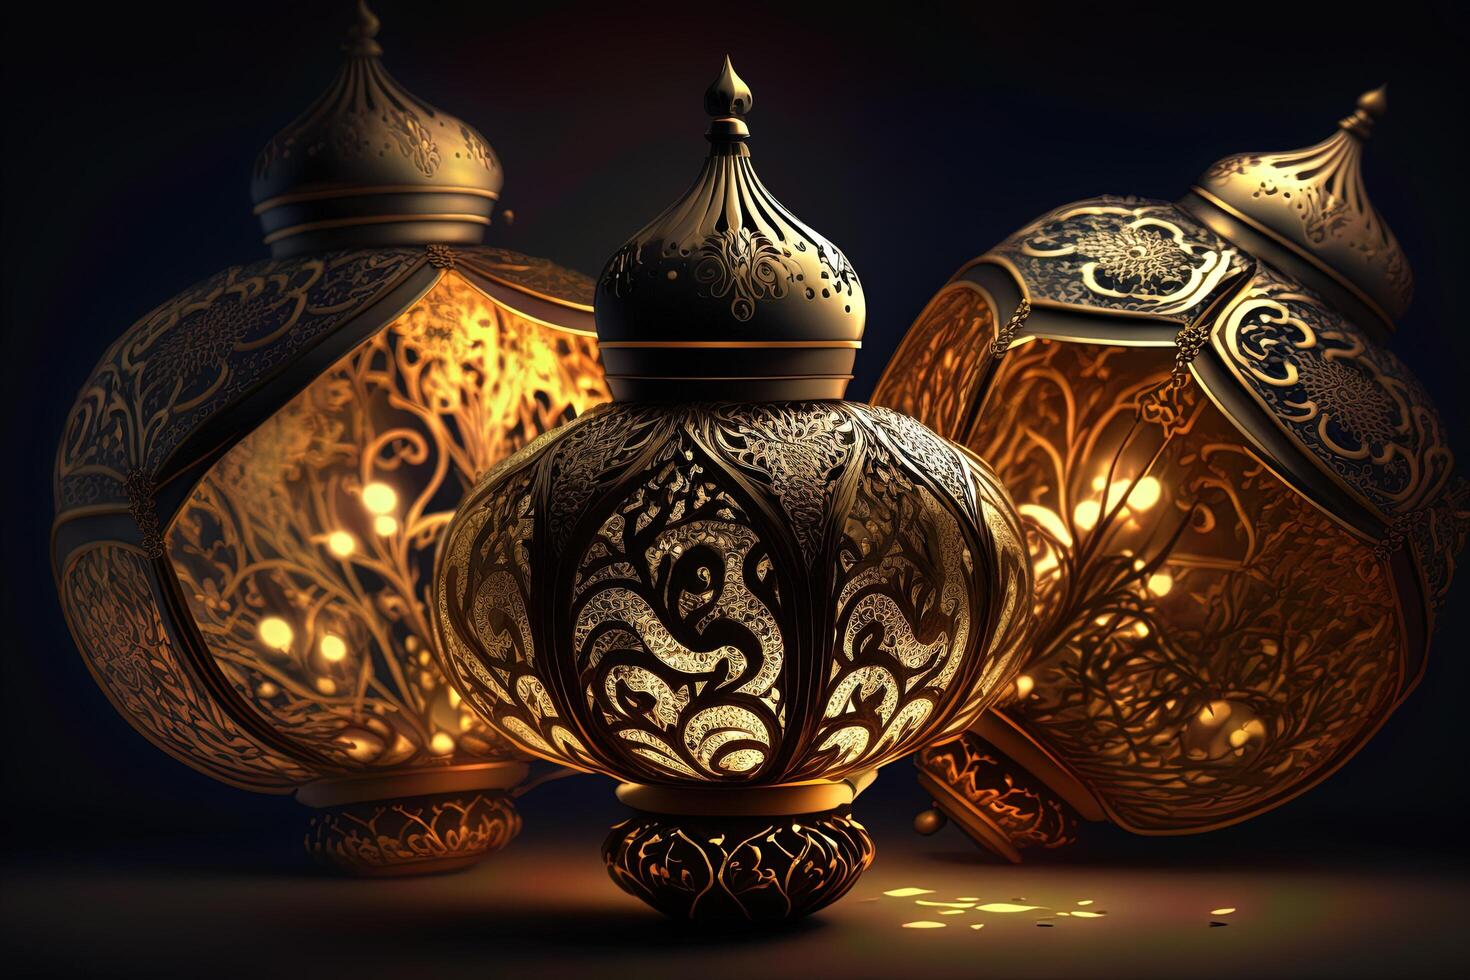 eid mubarak bakgrund, moské i de månsken på natt 3d illustration, arabicum lyktor, ai generativ. foto